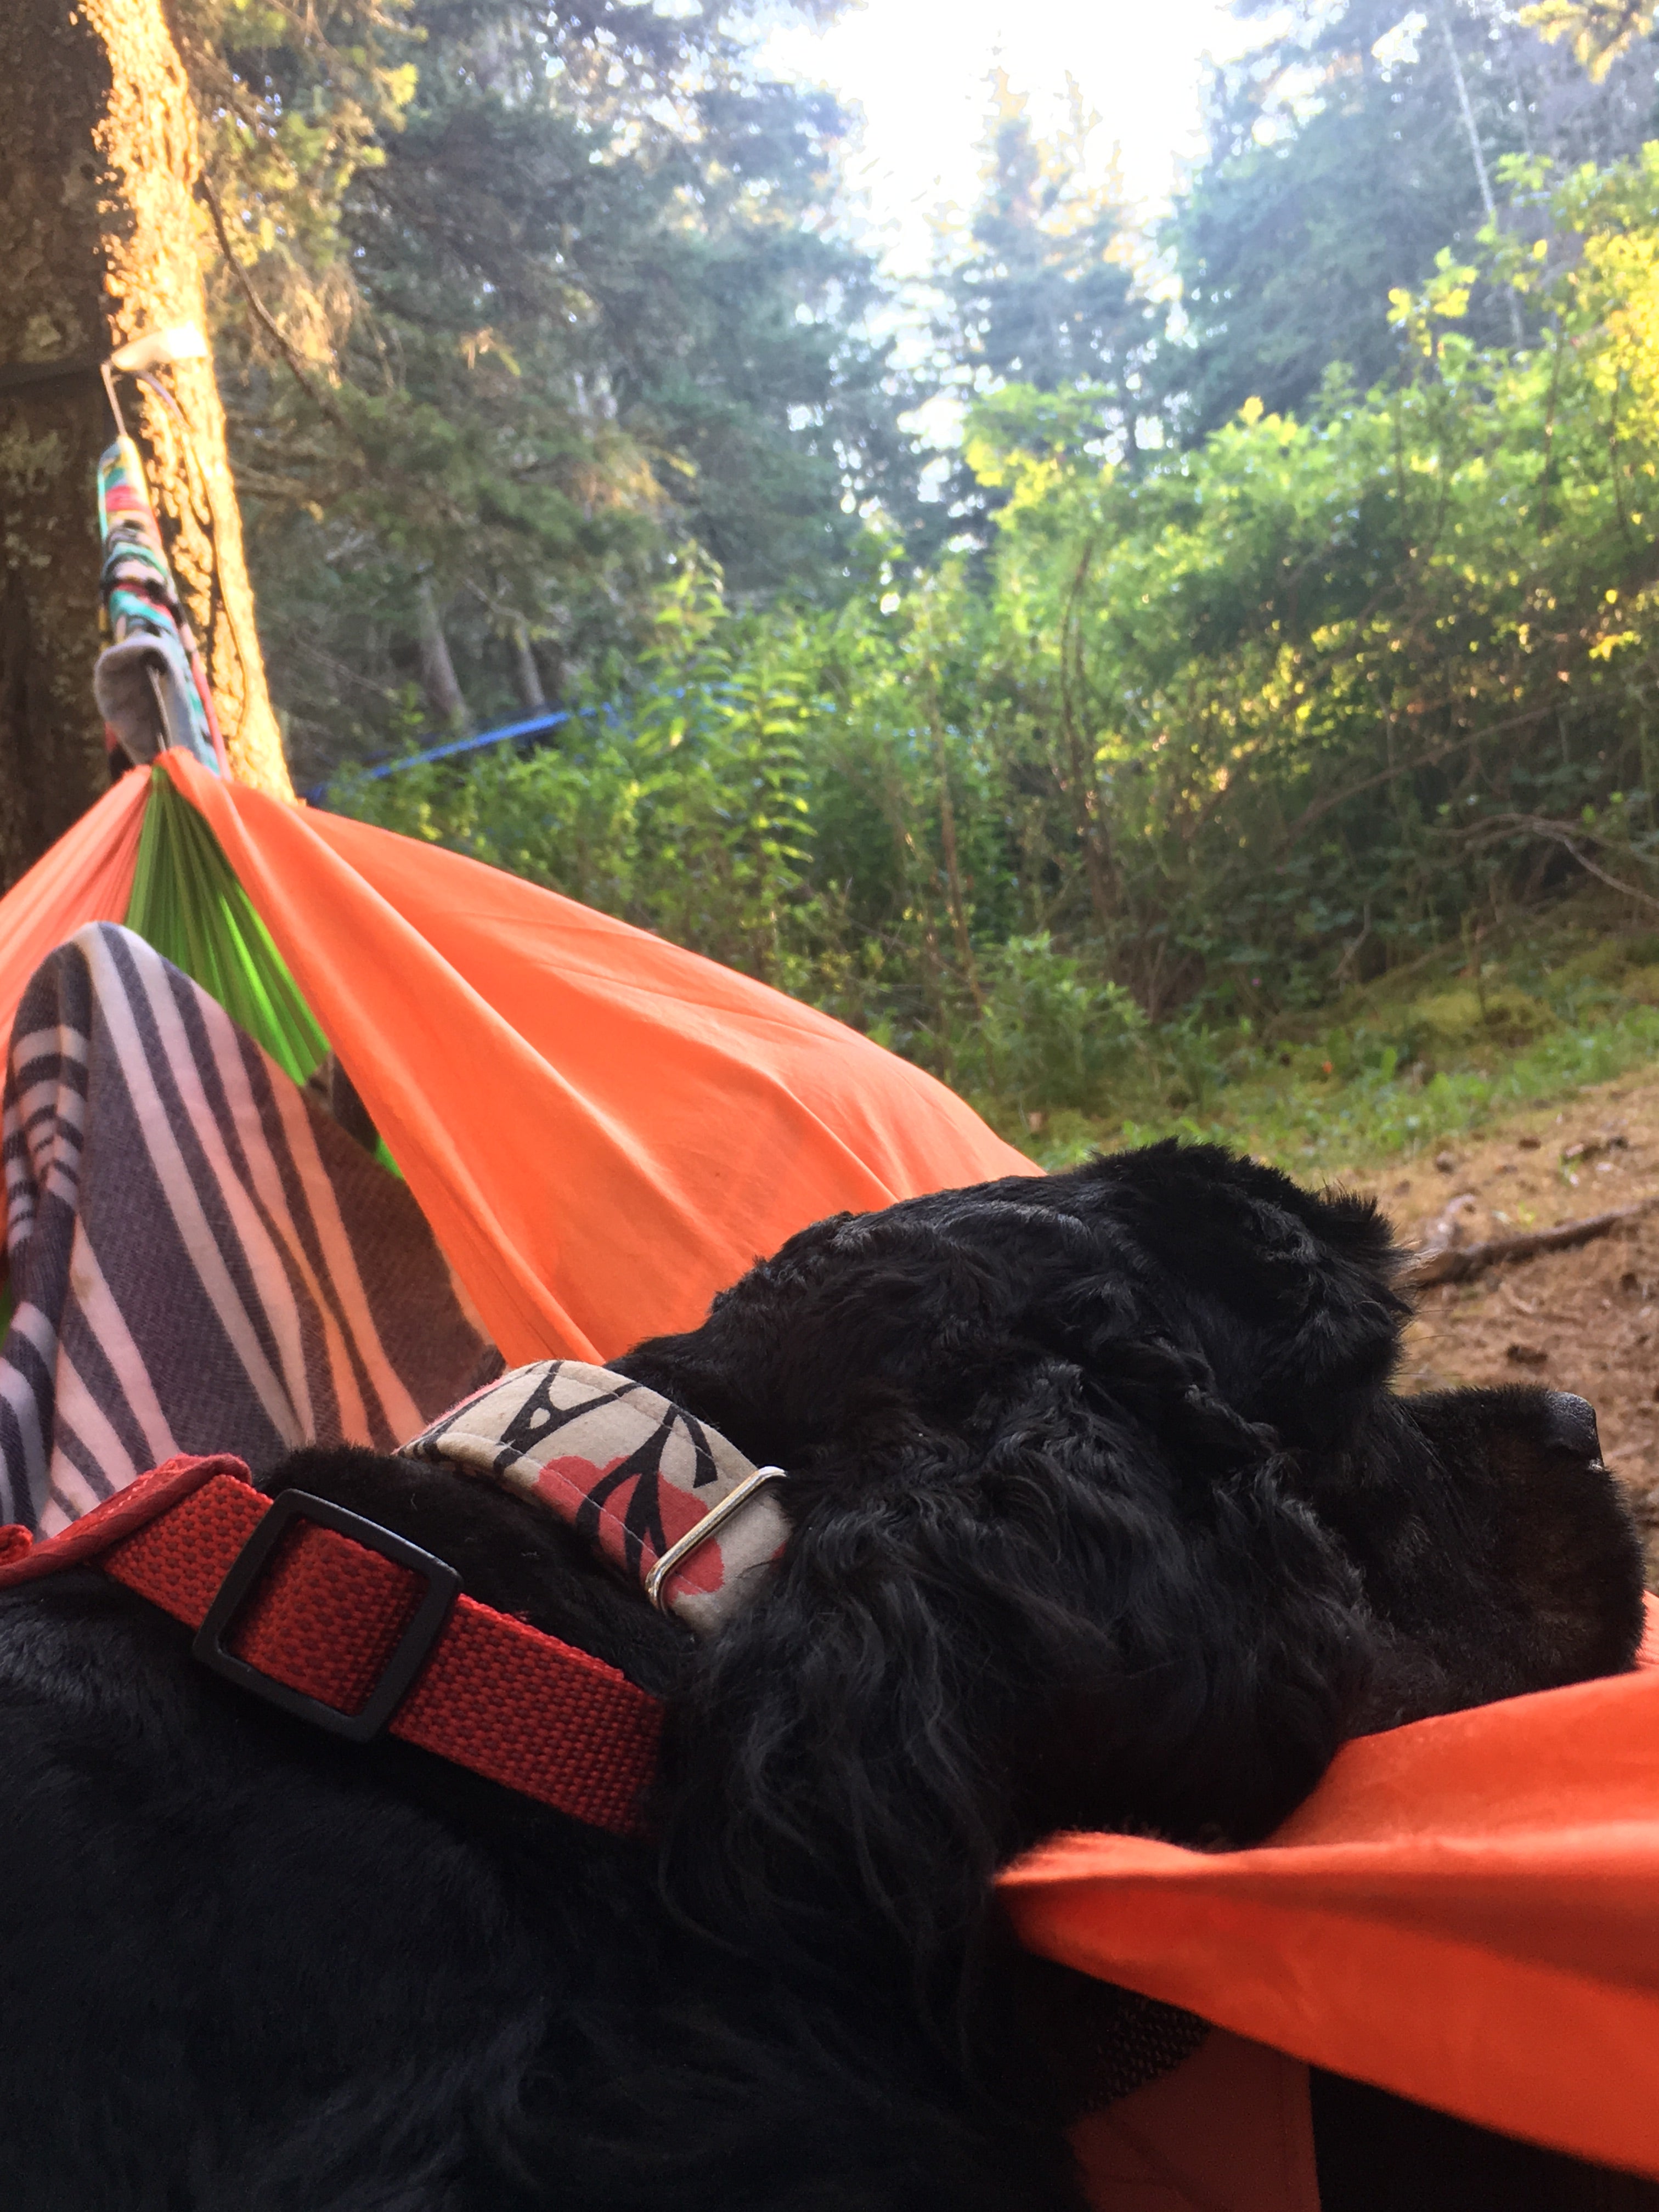 Frida likes to hammock too!